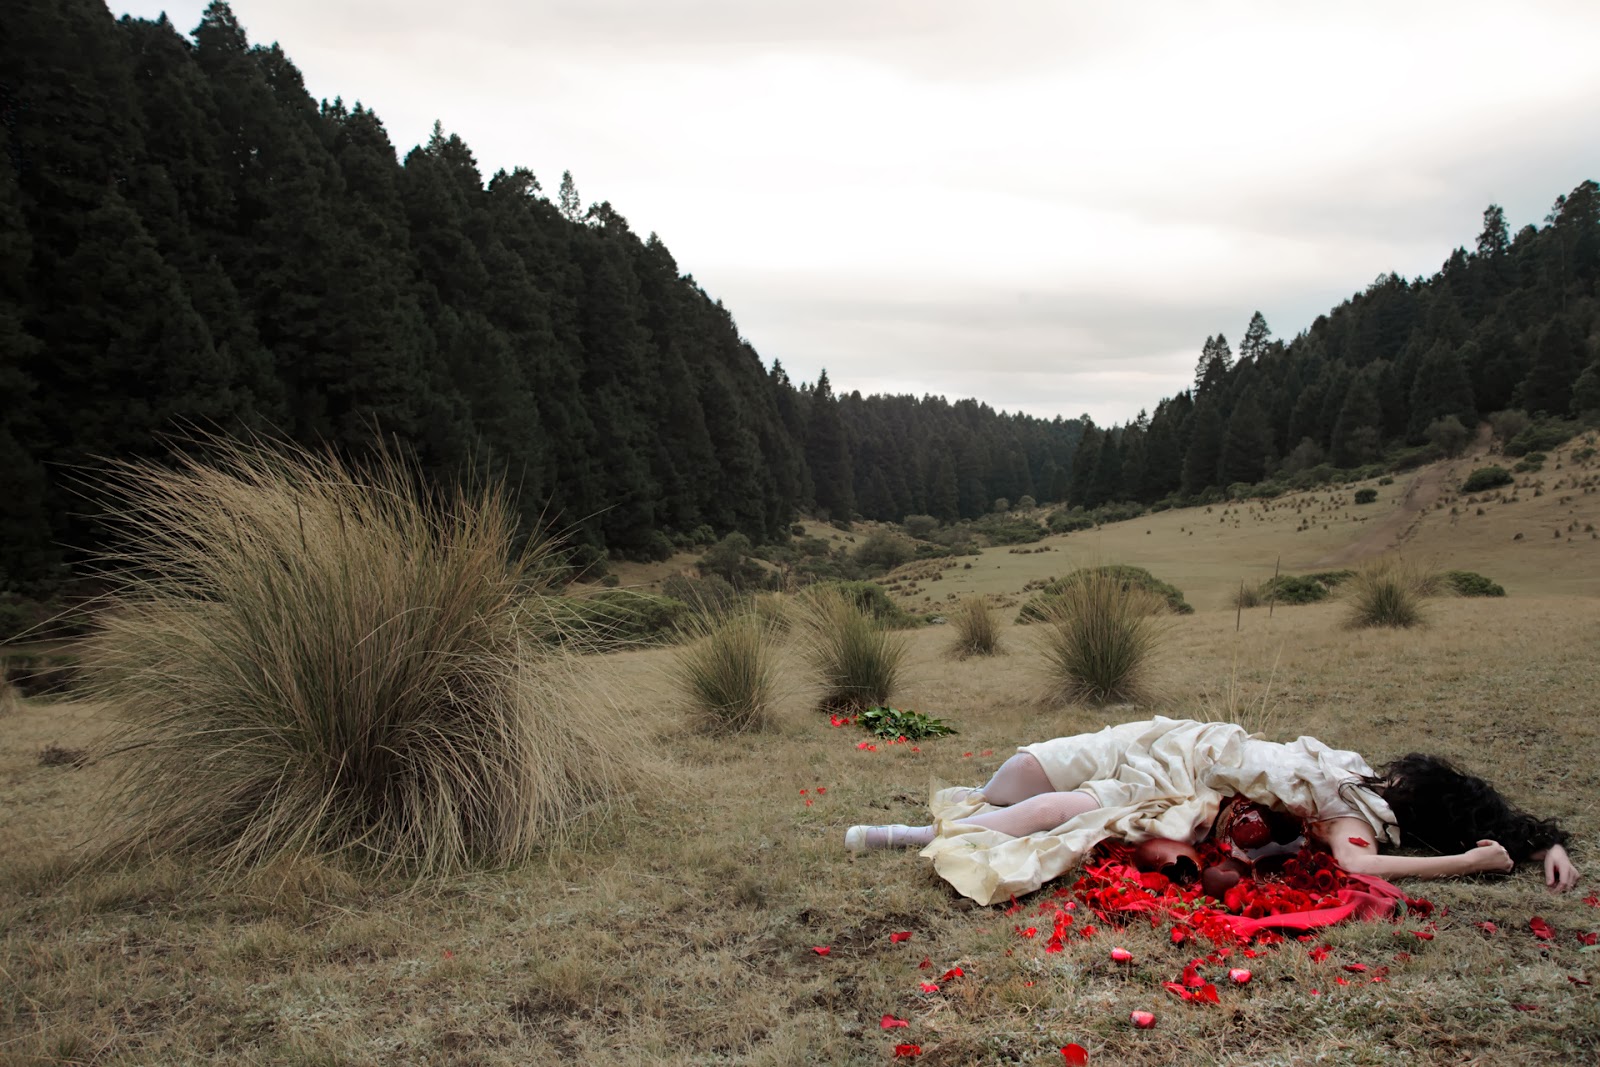 ©Daniela Edburg - The remains of the day. Fotografía | Photography